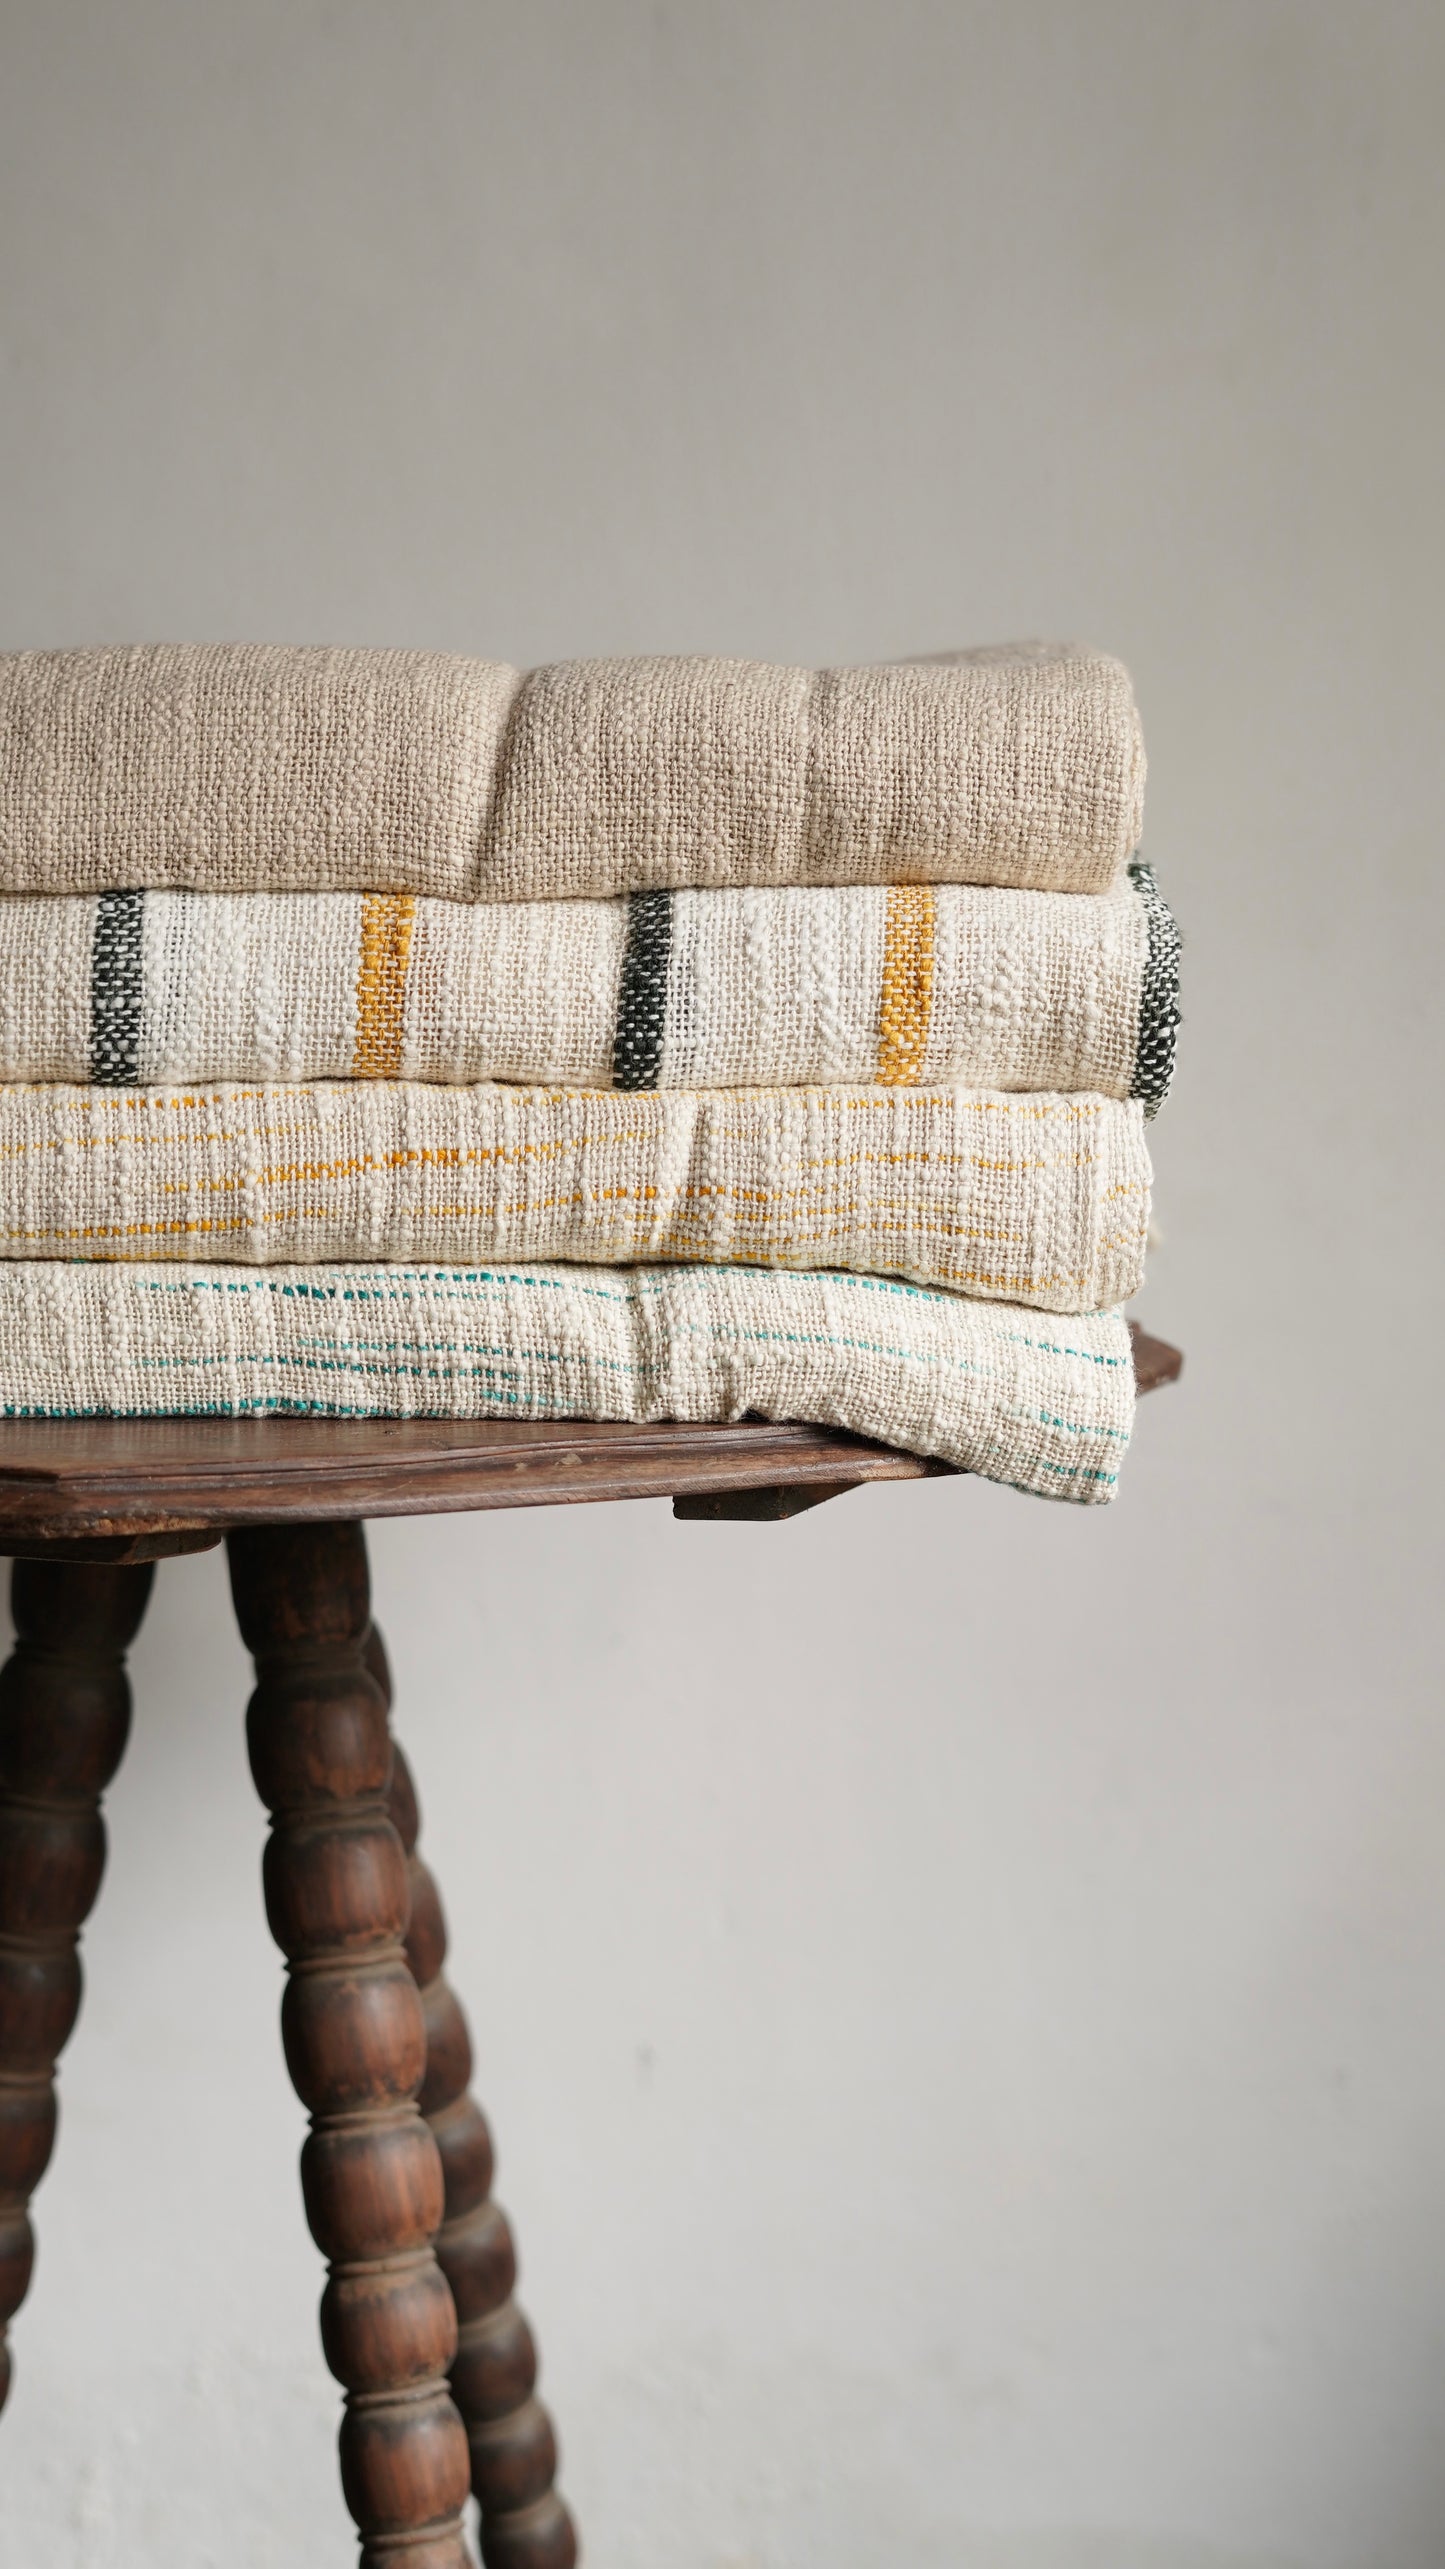 Puebla Rustic Blanket/Bed Spread